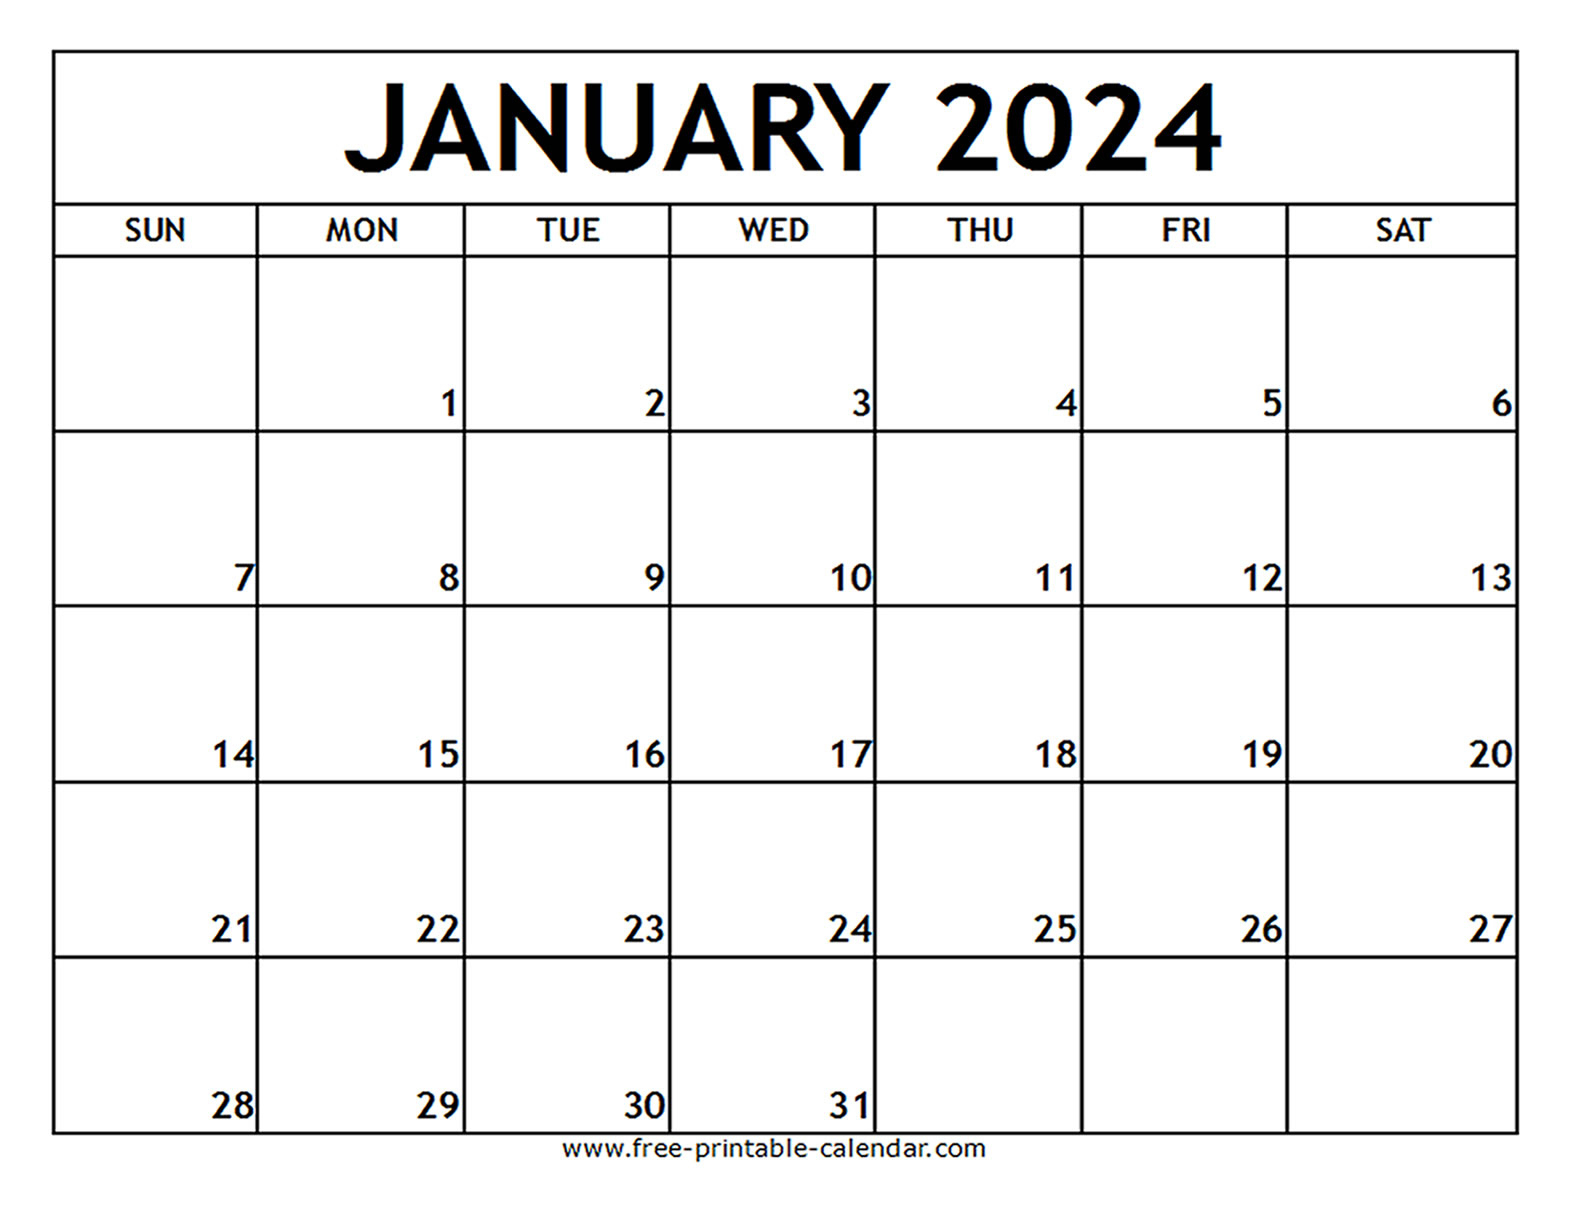 January 2024 Printable Calendar - Free-Printable-Calendar | 2024 Calendar Free Printable